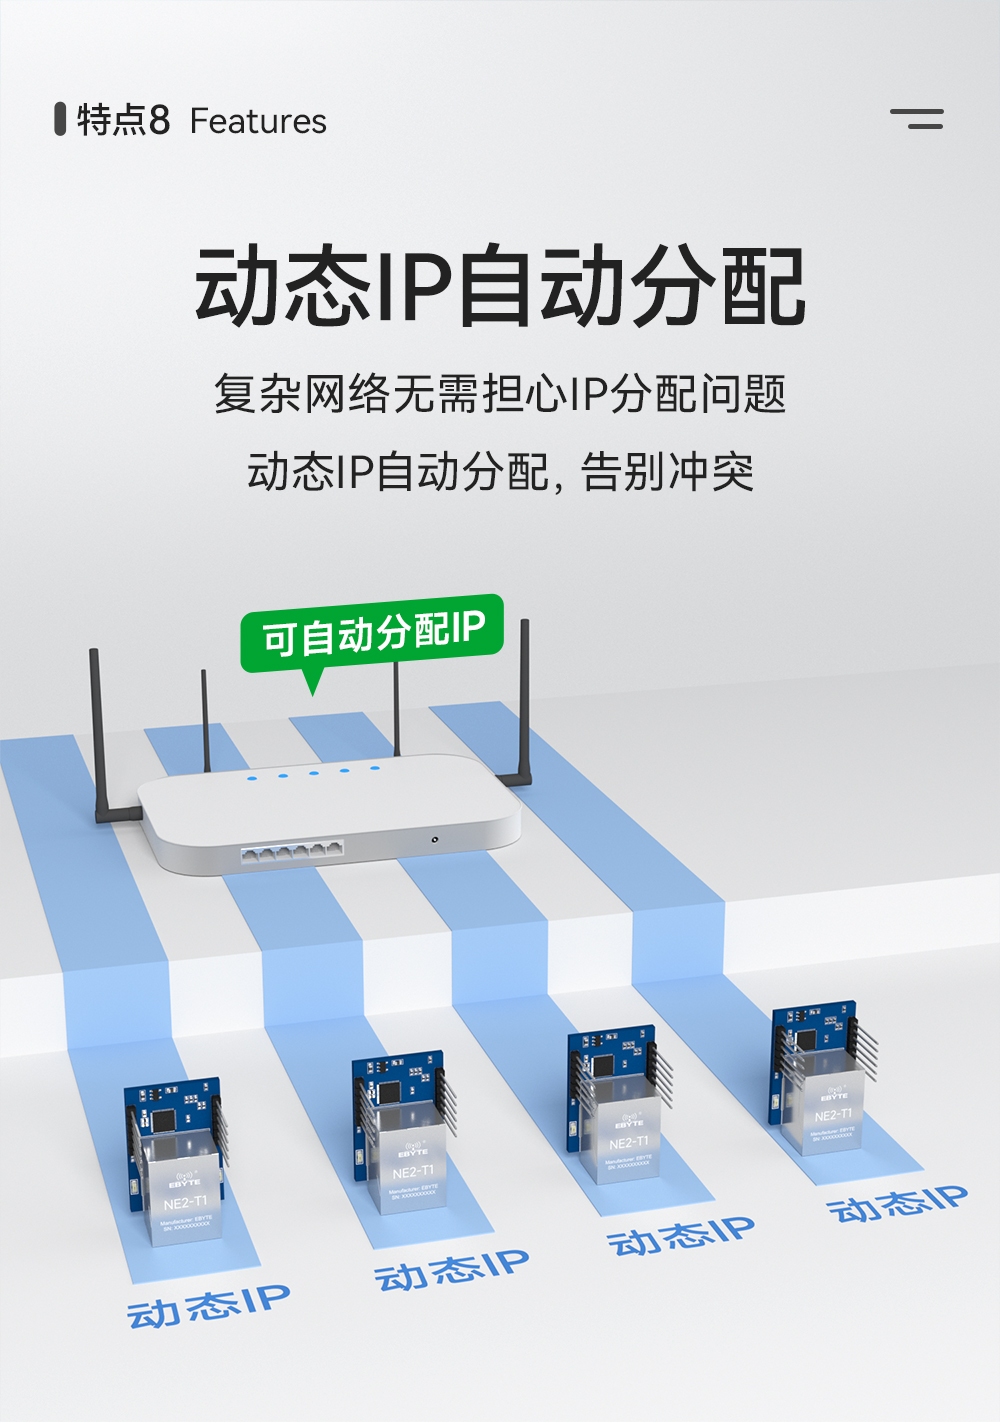 NE2-T1 串口转以太网超级网口模组 (11)